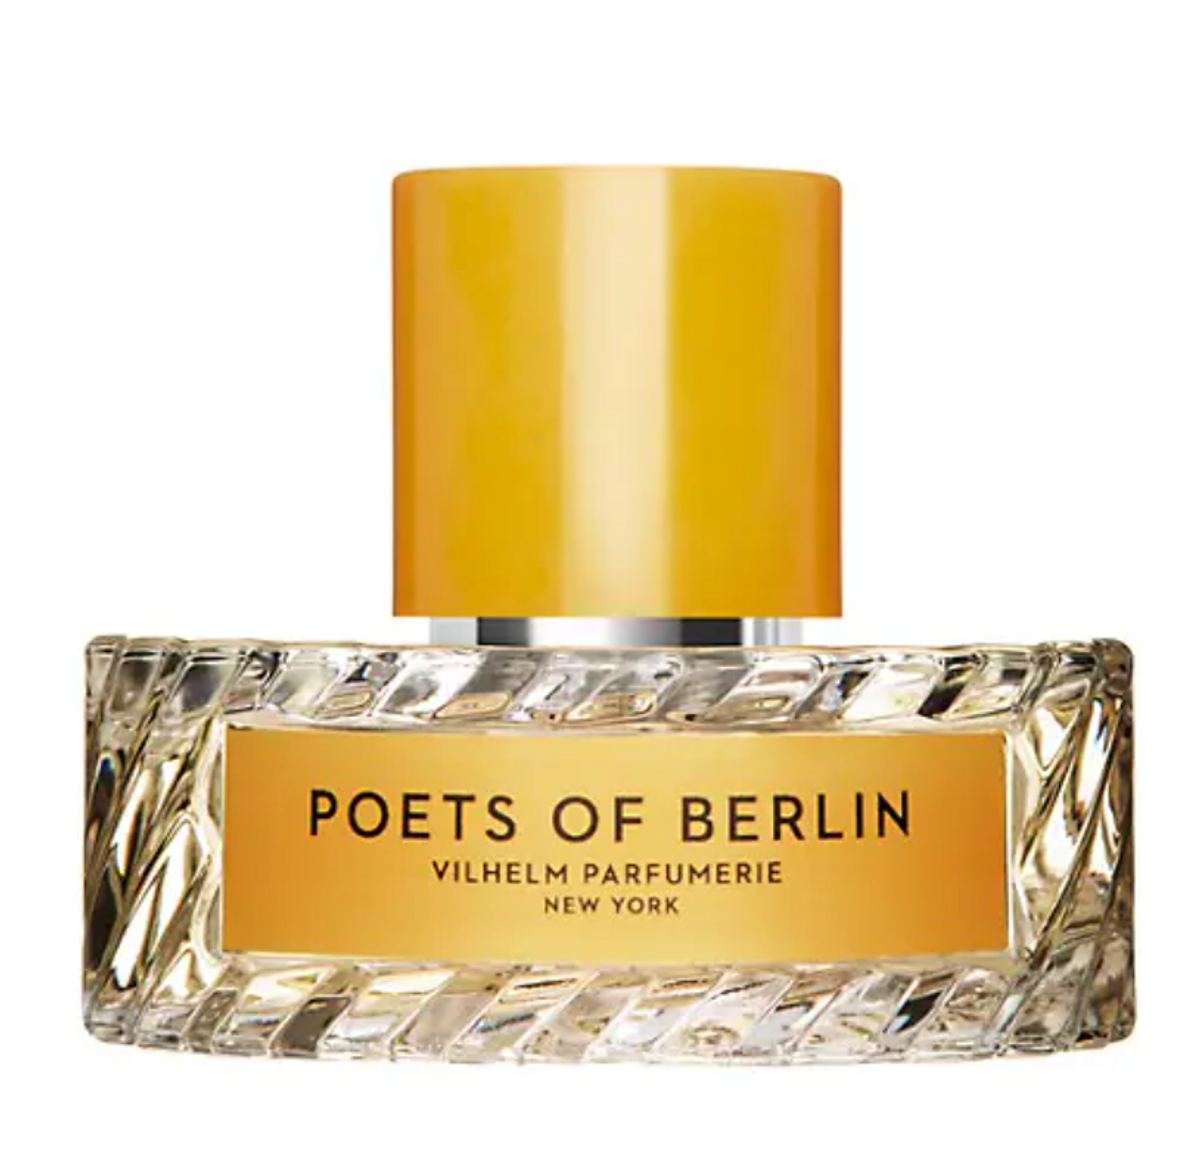 vilhelm parfumerie poets of berlin